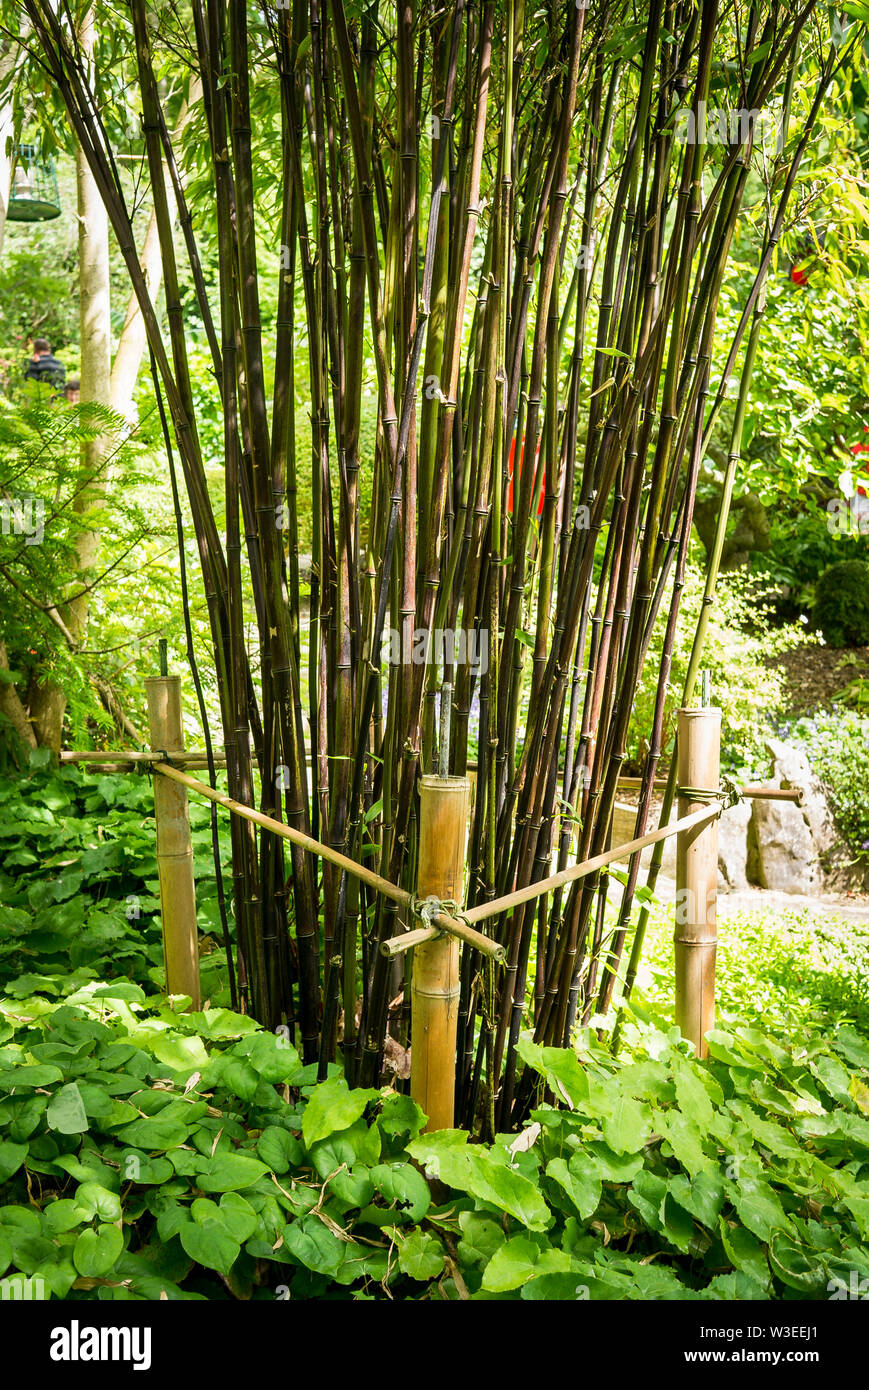 Muster Bambus Pflanze ordentlich durch eine einfache Cut bamboo Zuckerrohr Trainer in einem englischen Interpretation eines Chinesischen Gartens eingeschränkt Stockfoto